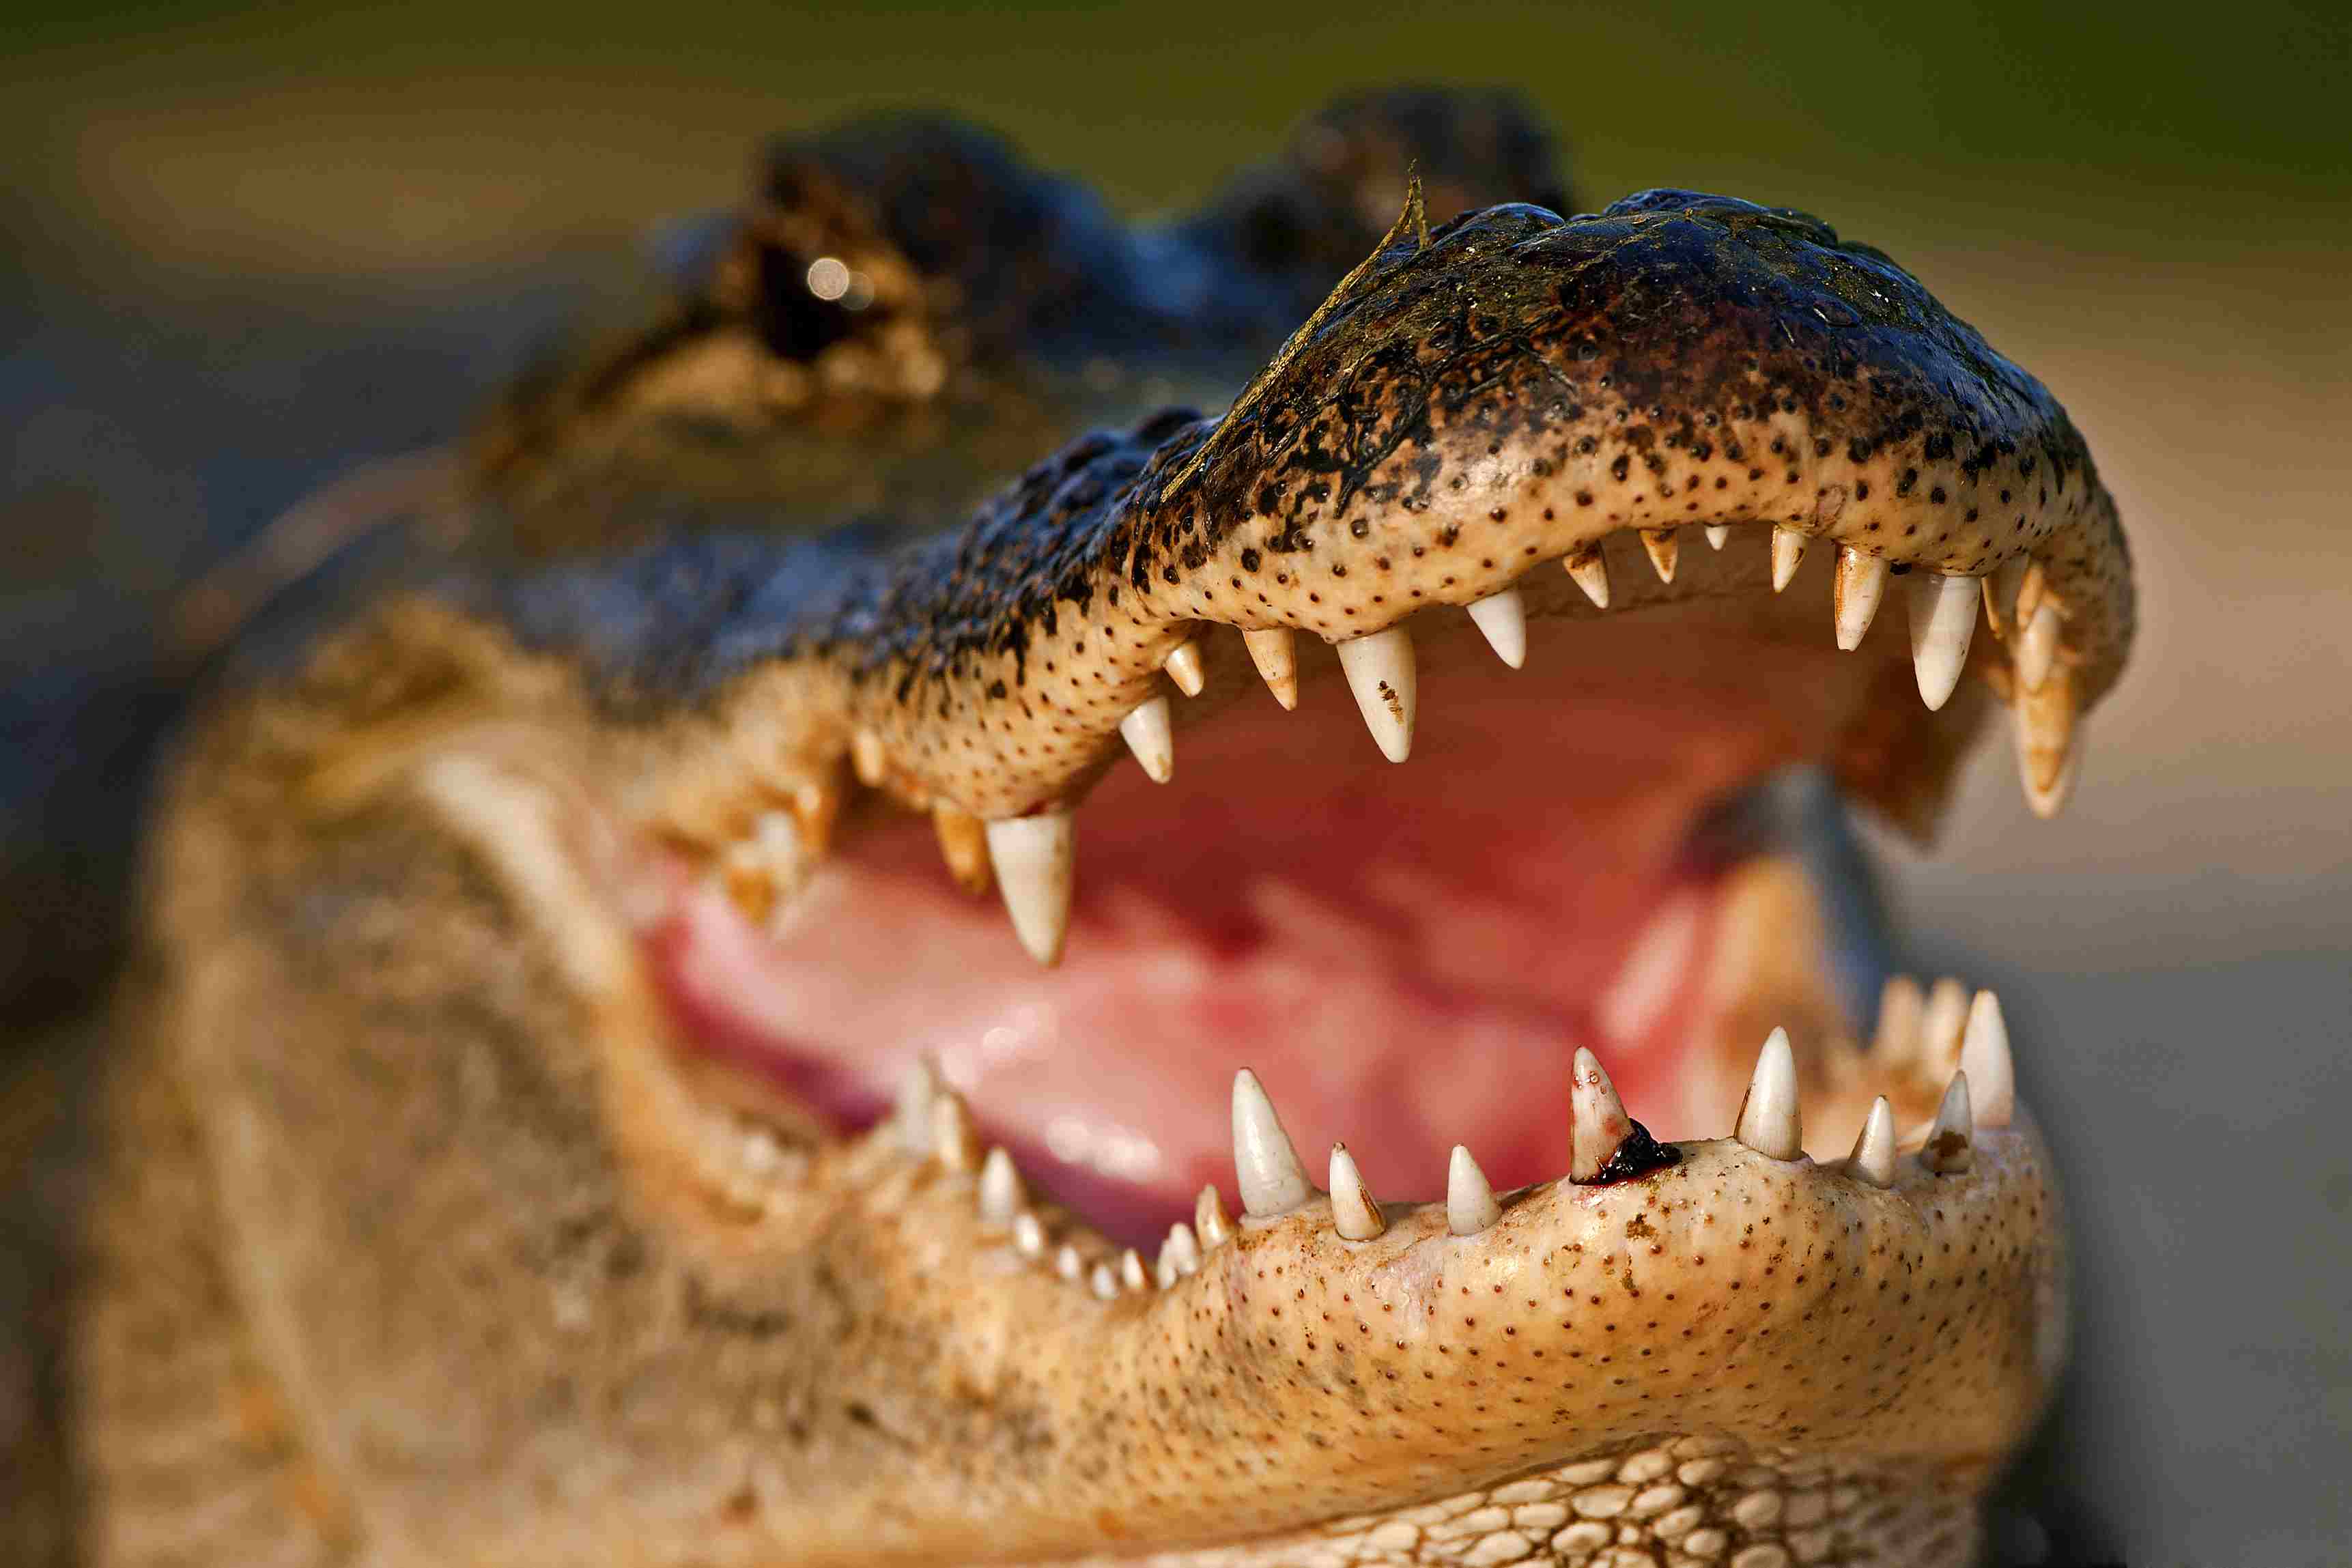 Alligator baring its teeth